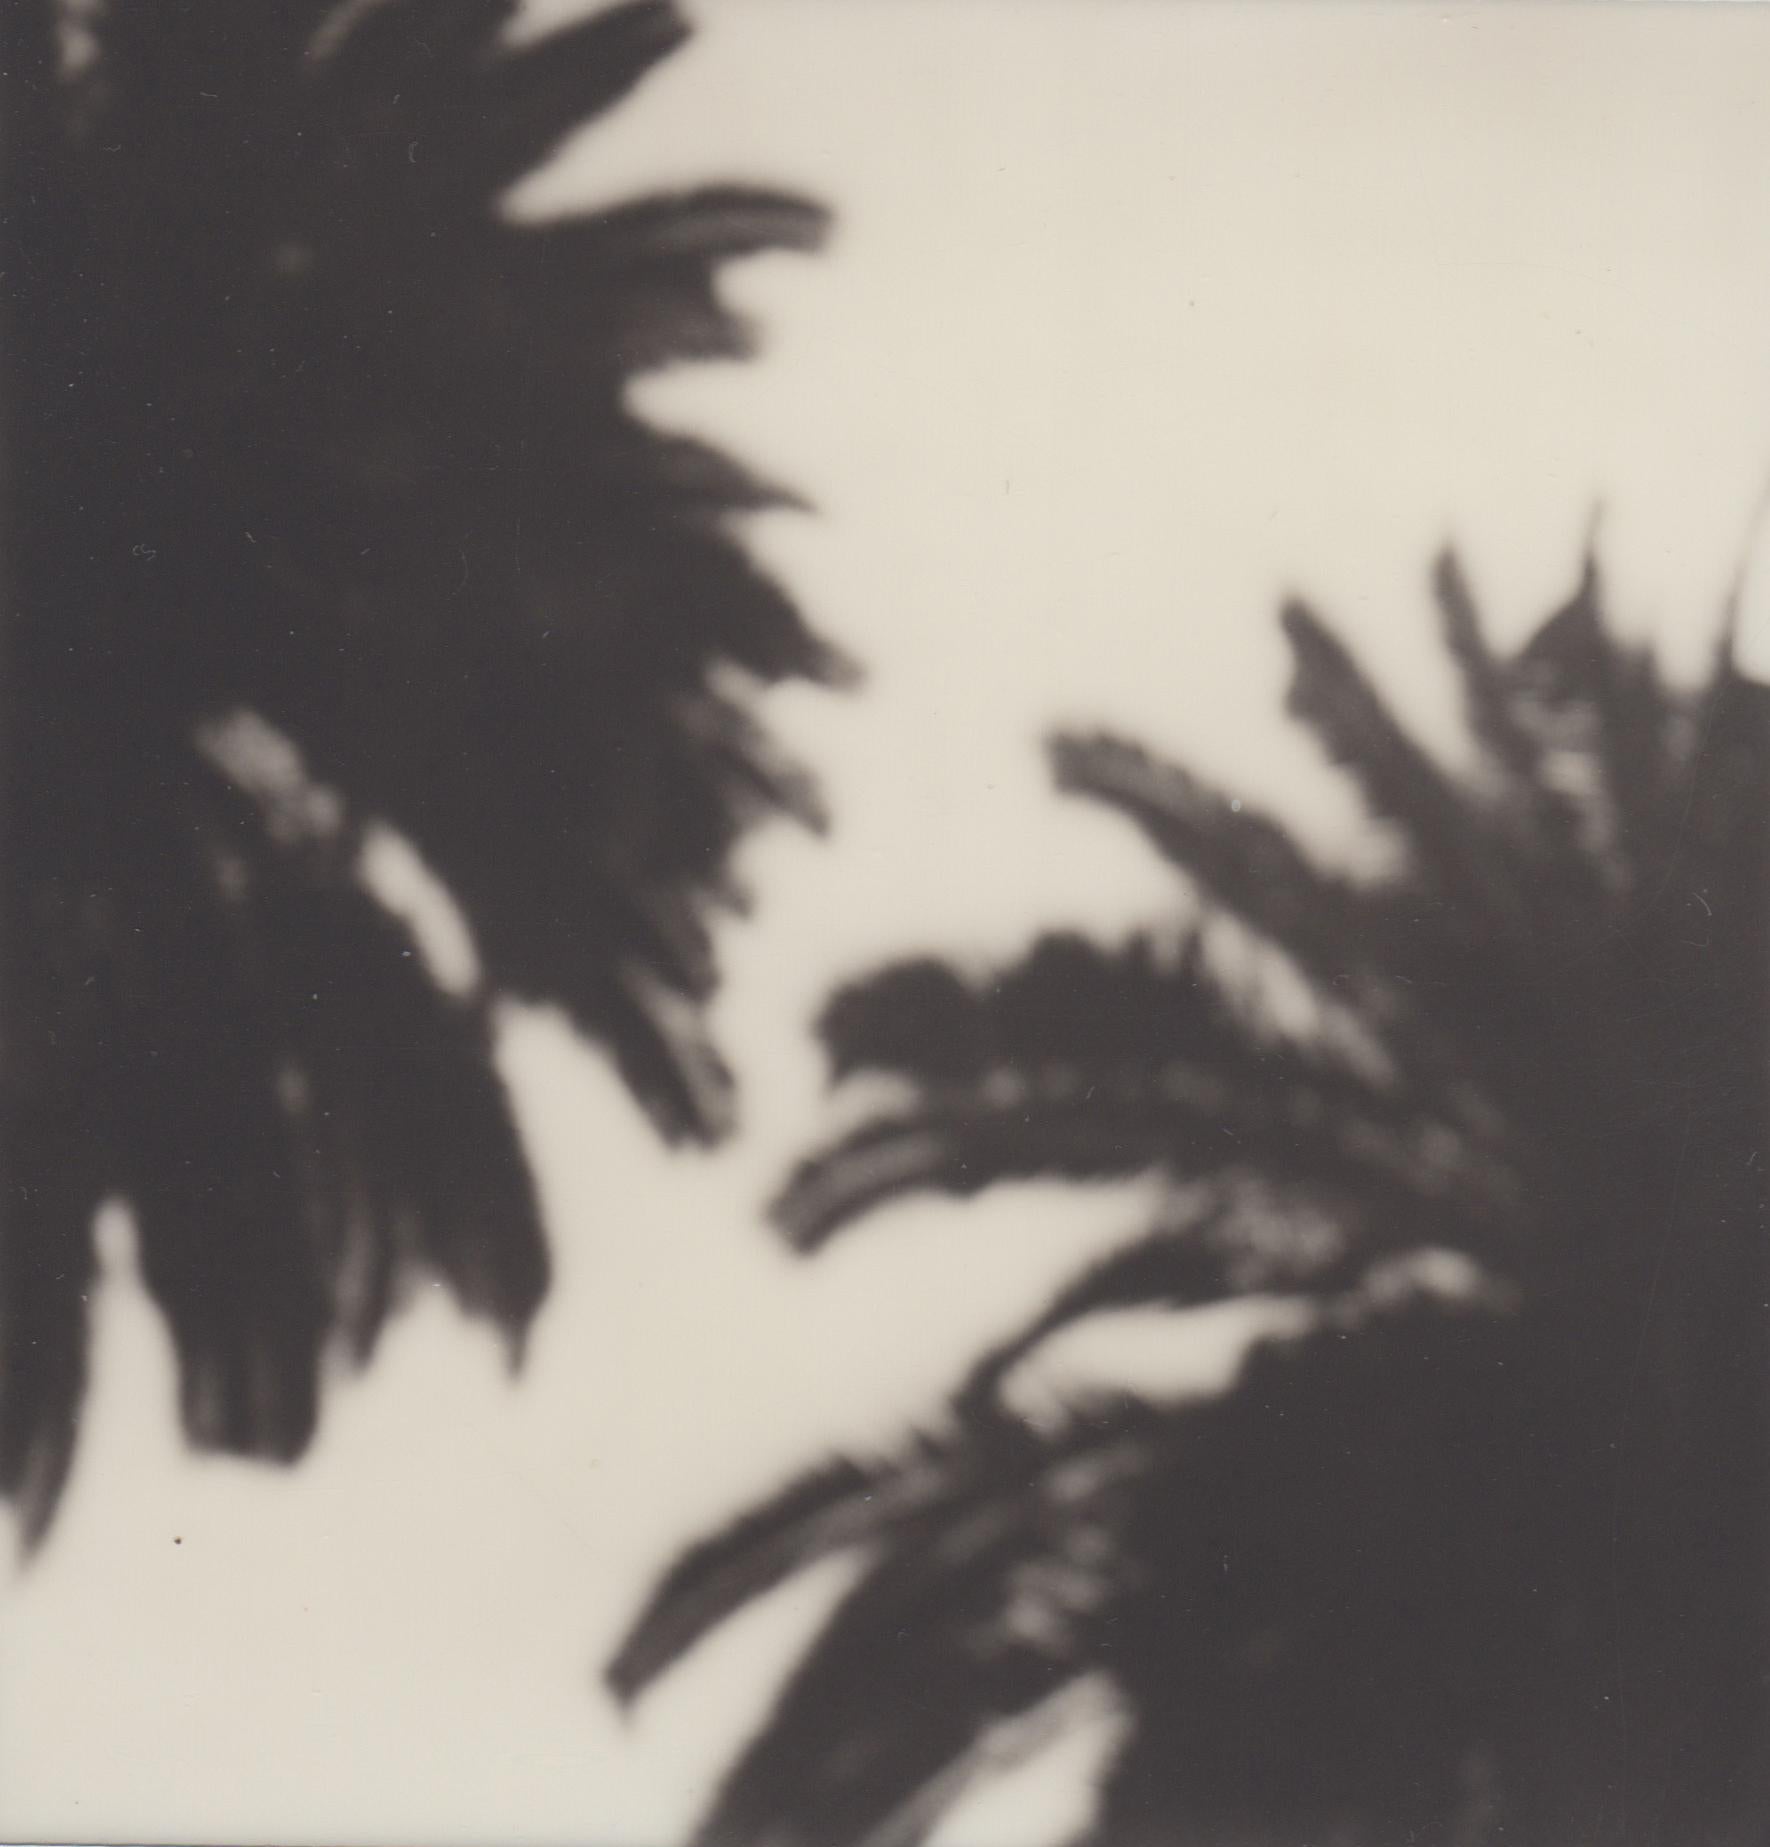 Calme comme un palmier - Gravure photographique contemporaine en noir et blanc du 21e siècle